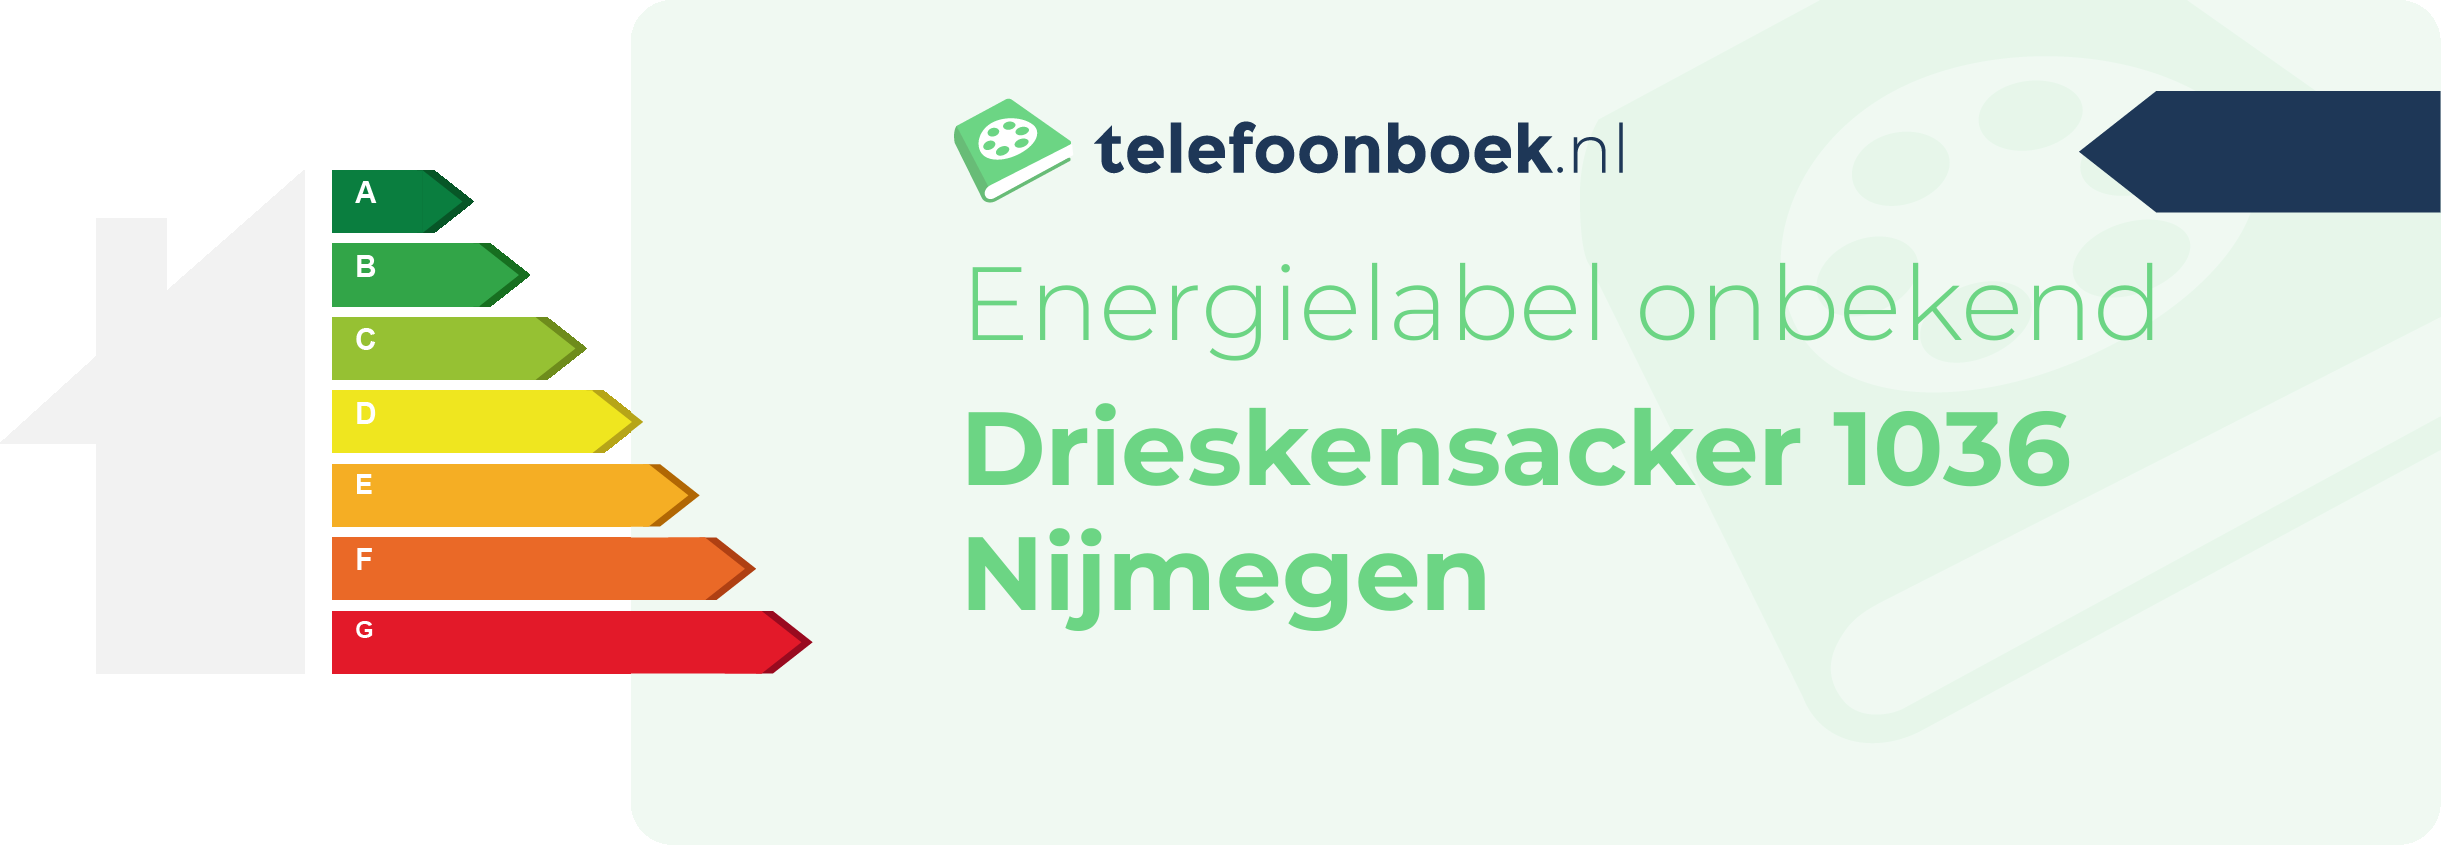 Energielabel Drieskensacker 1036 Nijmegen